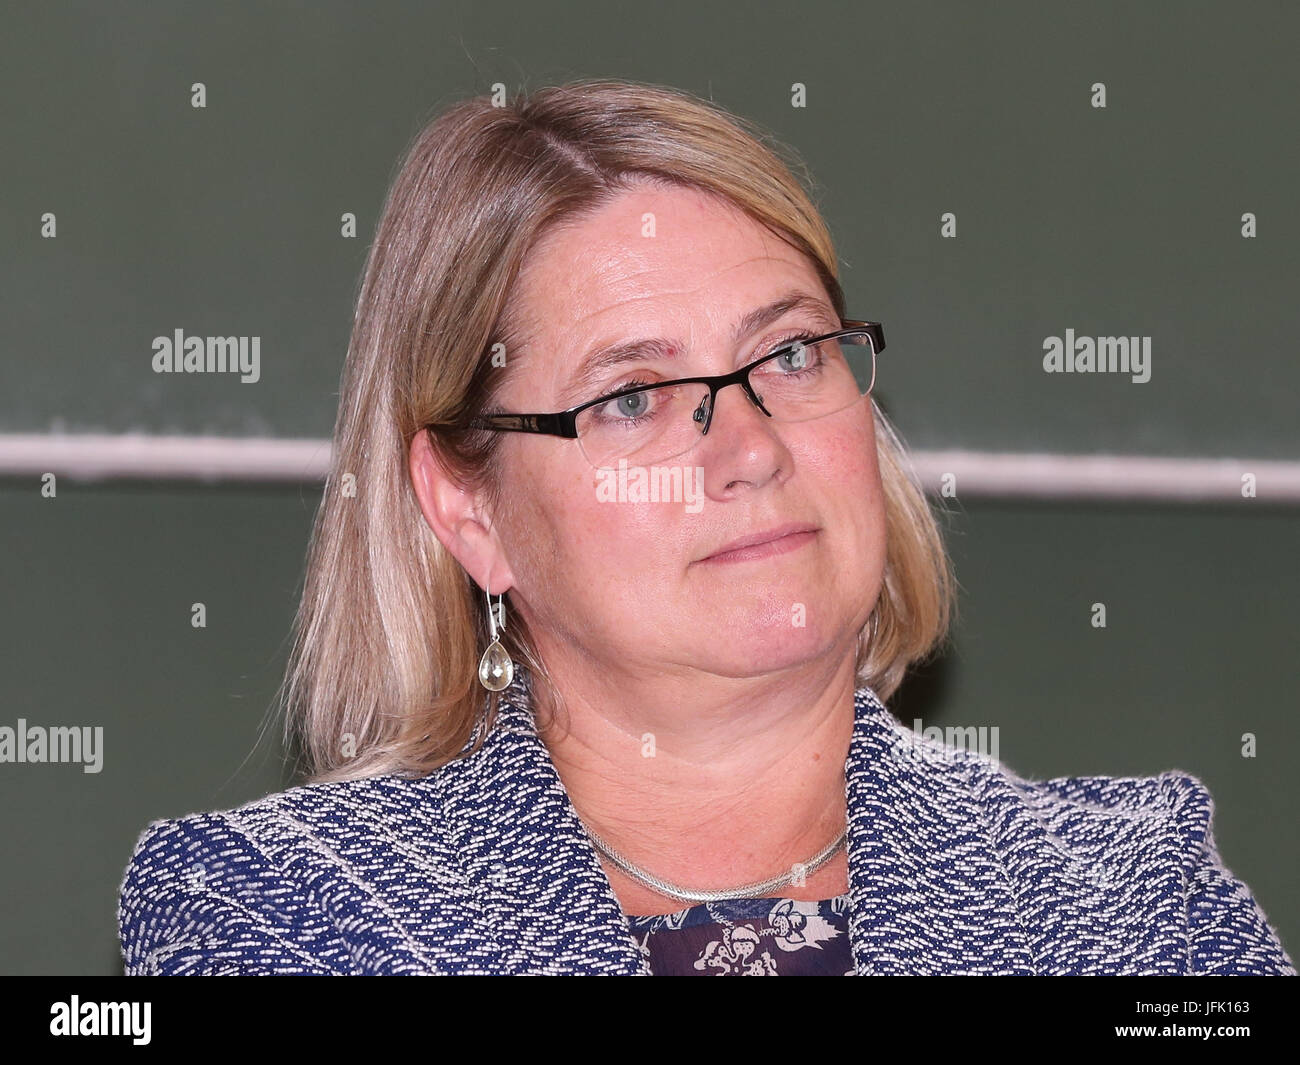 Susi Secrétaire Möbbeck (SPD) Commissaire à l'intégration de Saxe-Anhalt Banque D'Images